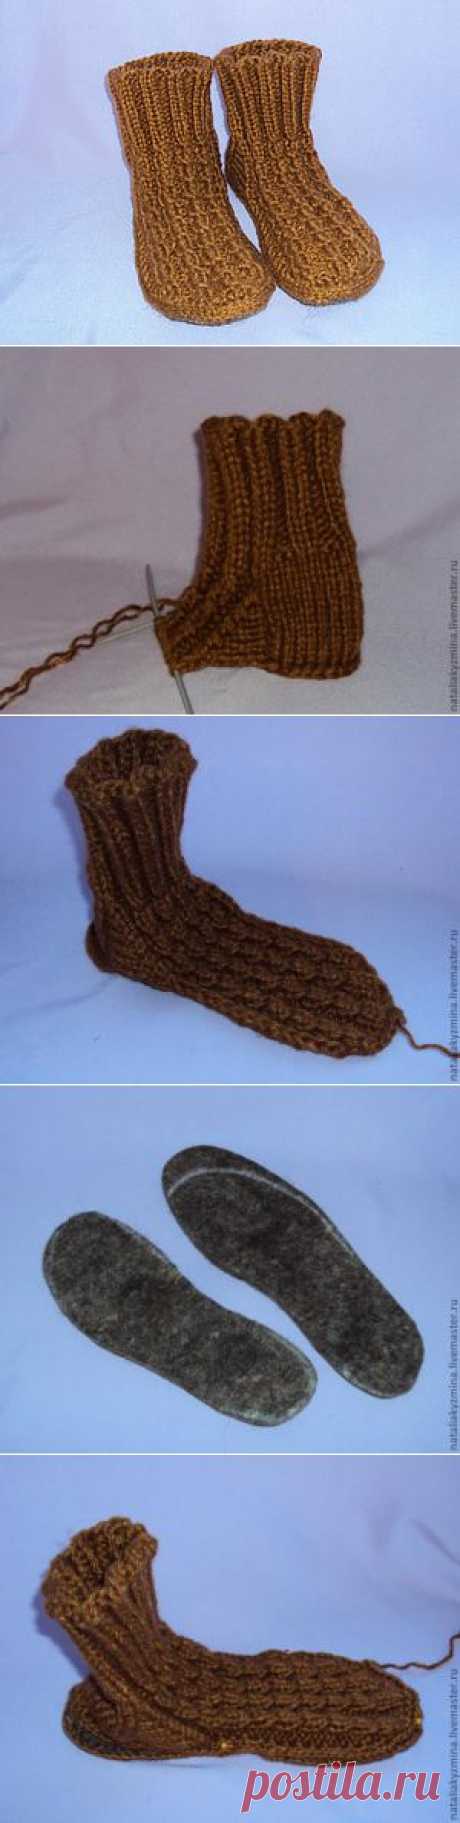 Носки с войлочной стелькой - Ярмарка Мастеров - ручная работа, handmade